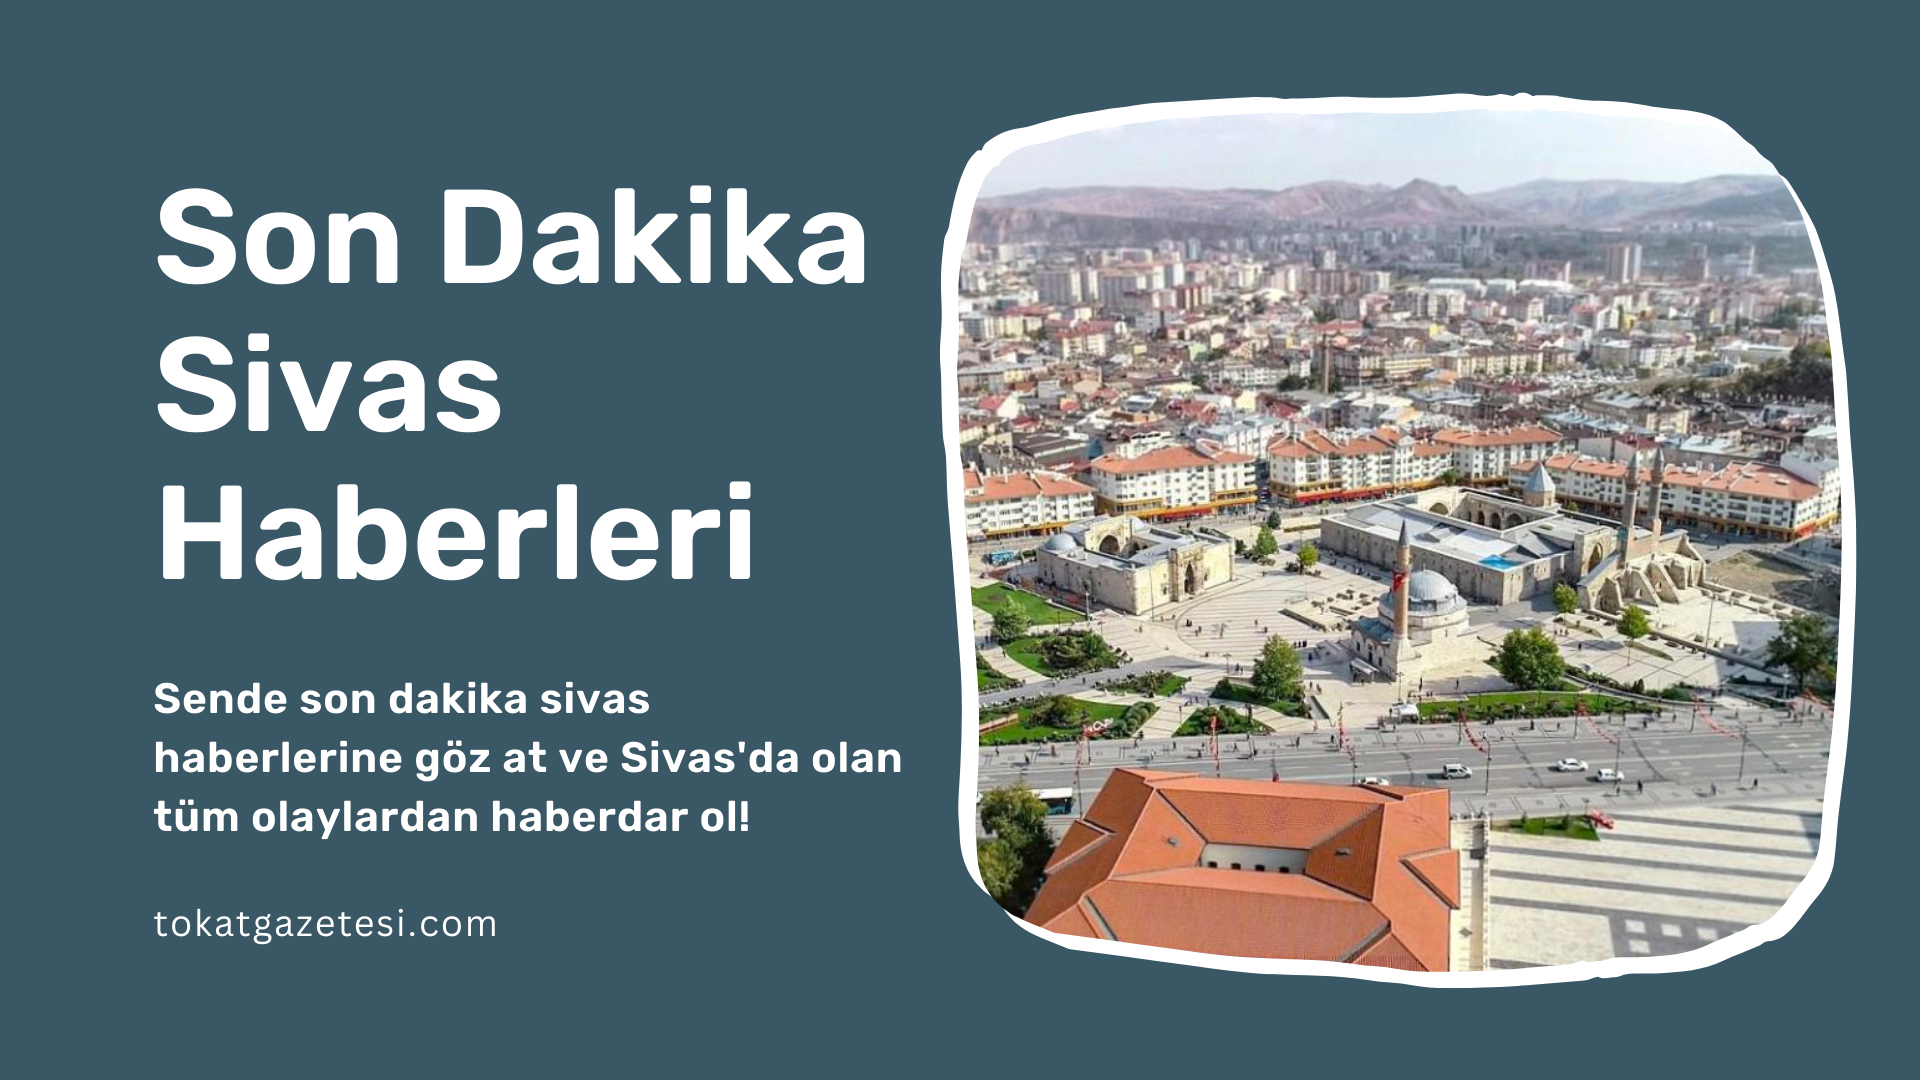 CHP Sivas Milletvekili Ulaş Karasu: Ankara-Sivas YHT hattındaki zemin bozukluklarına dikkat çekiyor